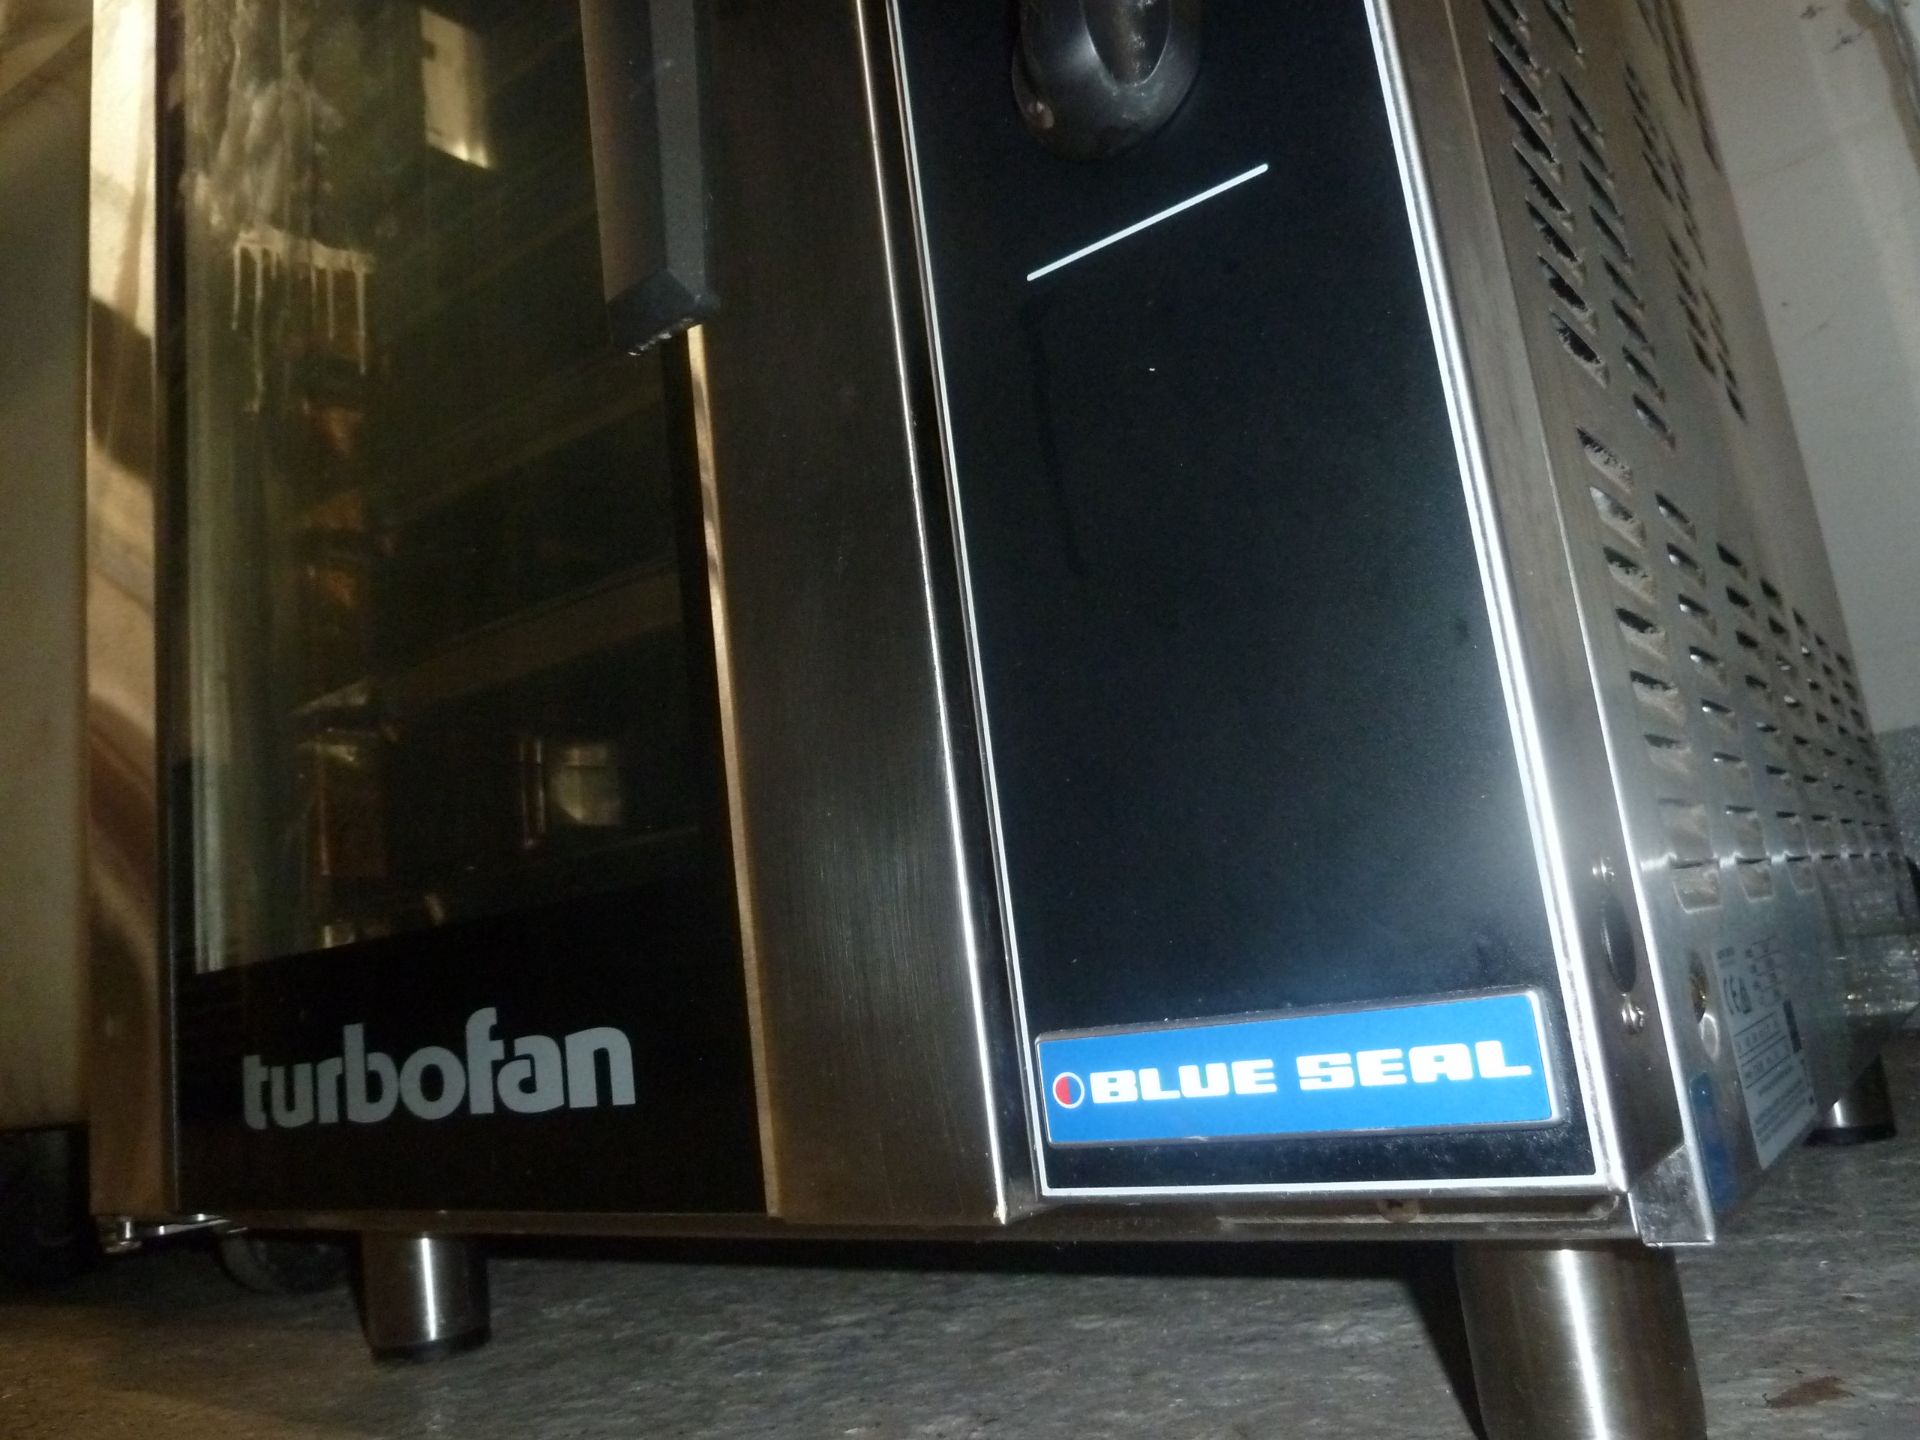 * Blueseal TurboFan Oven E33D5 5 tray turbo fan oven 600w x 700d x 720h - Image 5 of 5